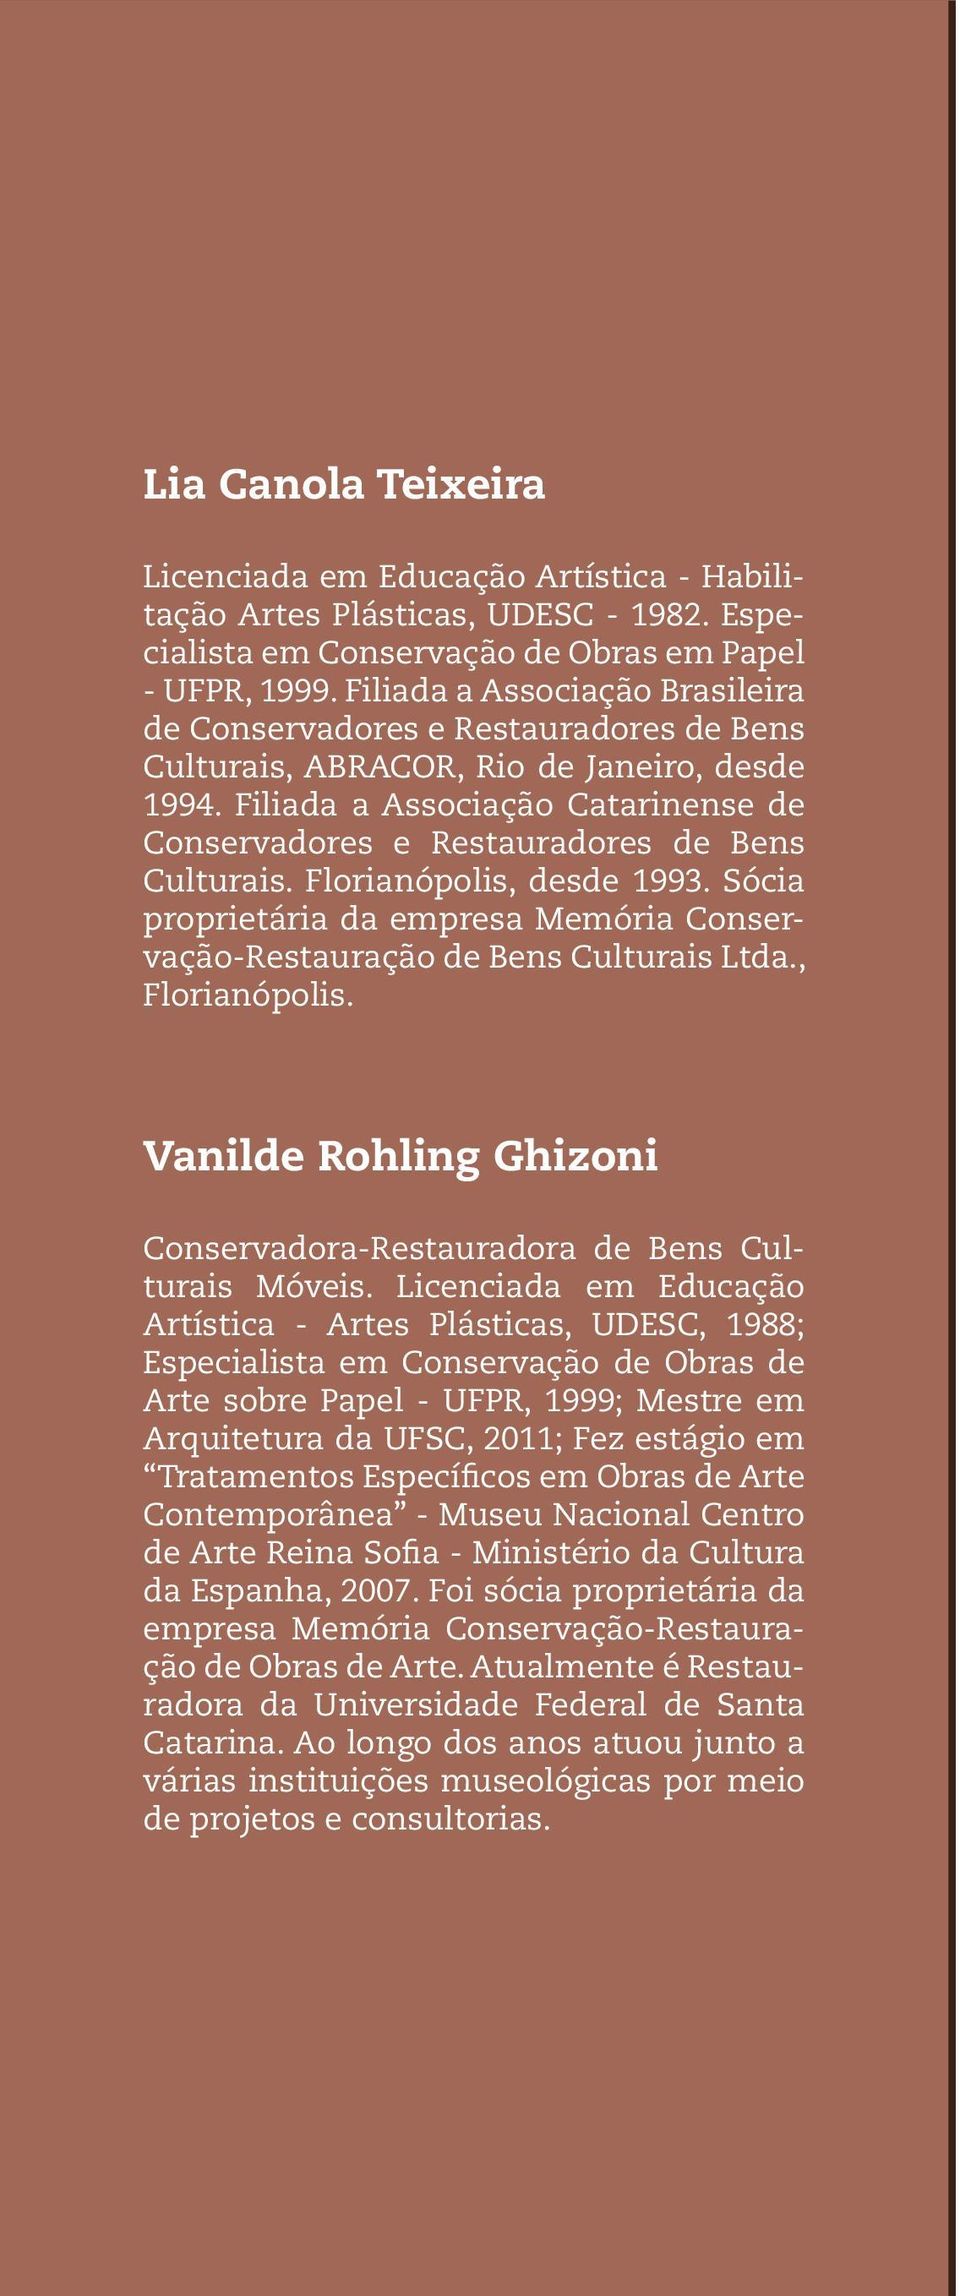 Filiada a Associação Catarinense de Conservadores e Restauradores de Bens Culturais. Florianópolis, desde 1993. Sócia proprietária da empresa Memória Conservação-Restauração de Bens Culturais Ltda.